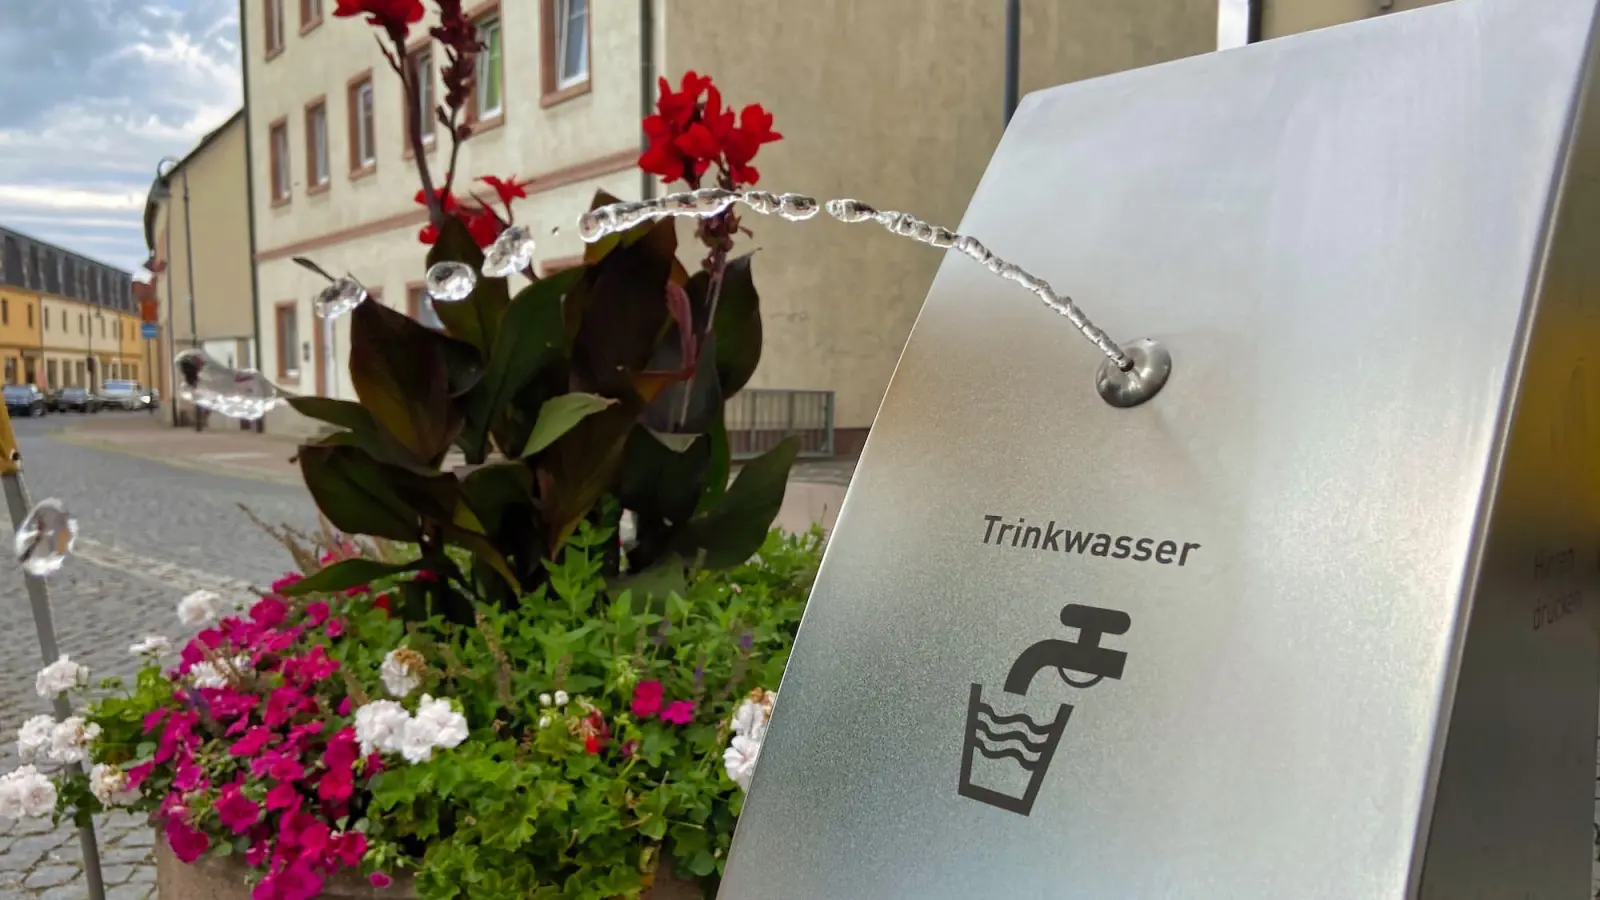 Wasser im Bogen auf Knopfdruck bietet der neue Trinkbrunnen der Leipziger Wasserwerke am Tauchaer Markt. (Foto: taucha-kompakt.de)